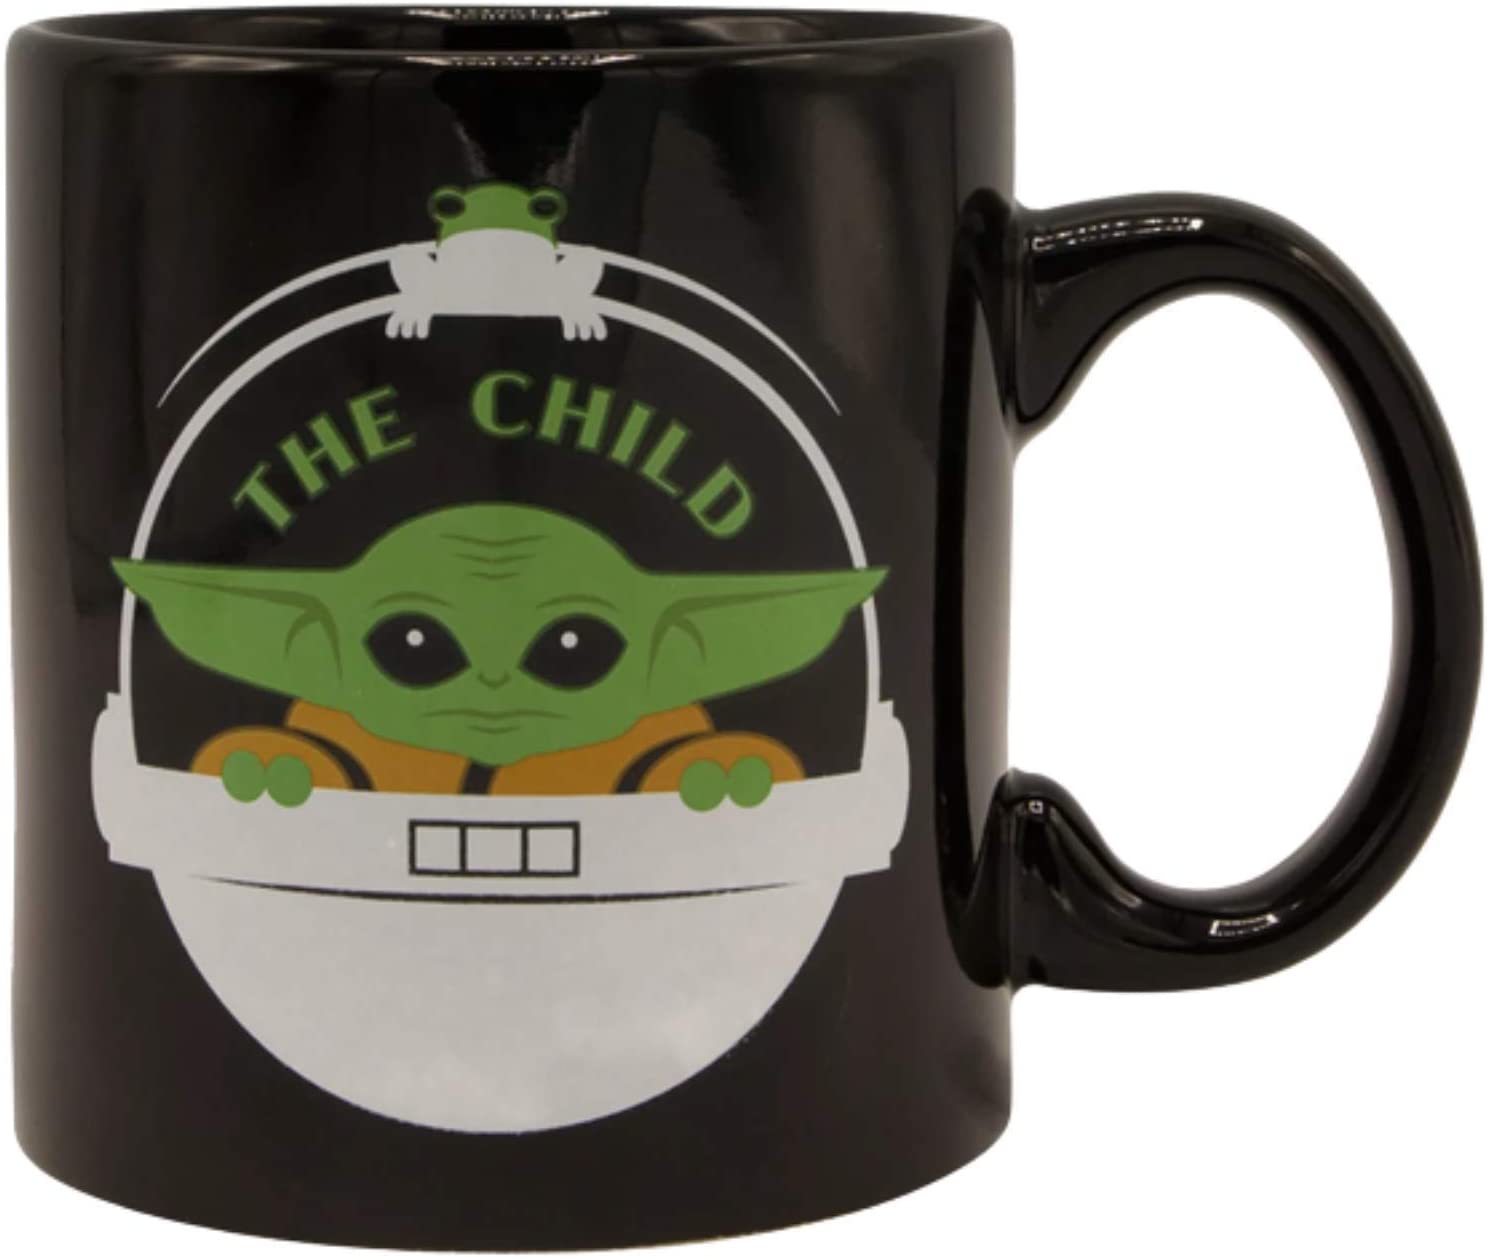 Star Wars Mandalorian The Child Baby Yoda, YODA!' Mug